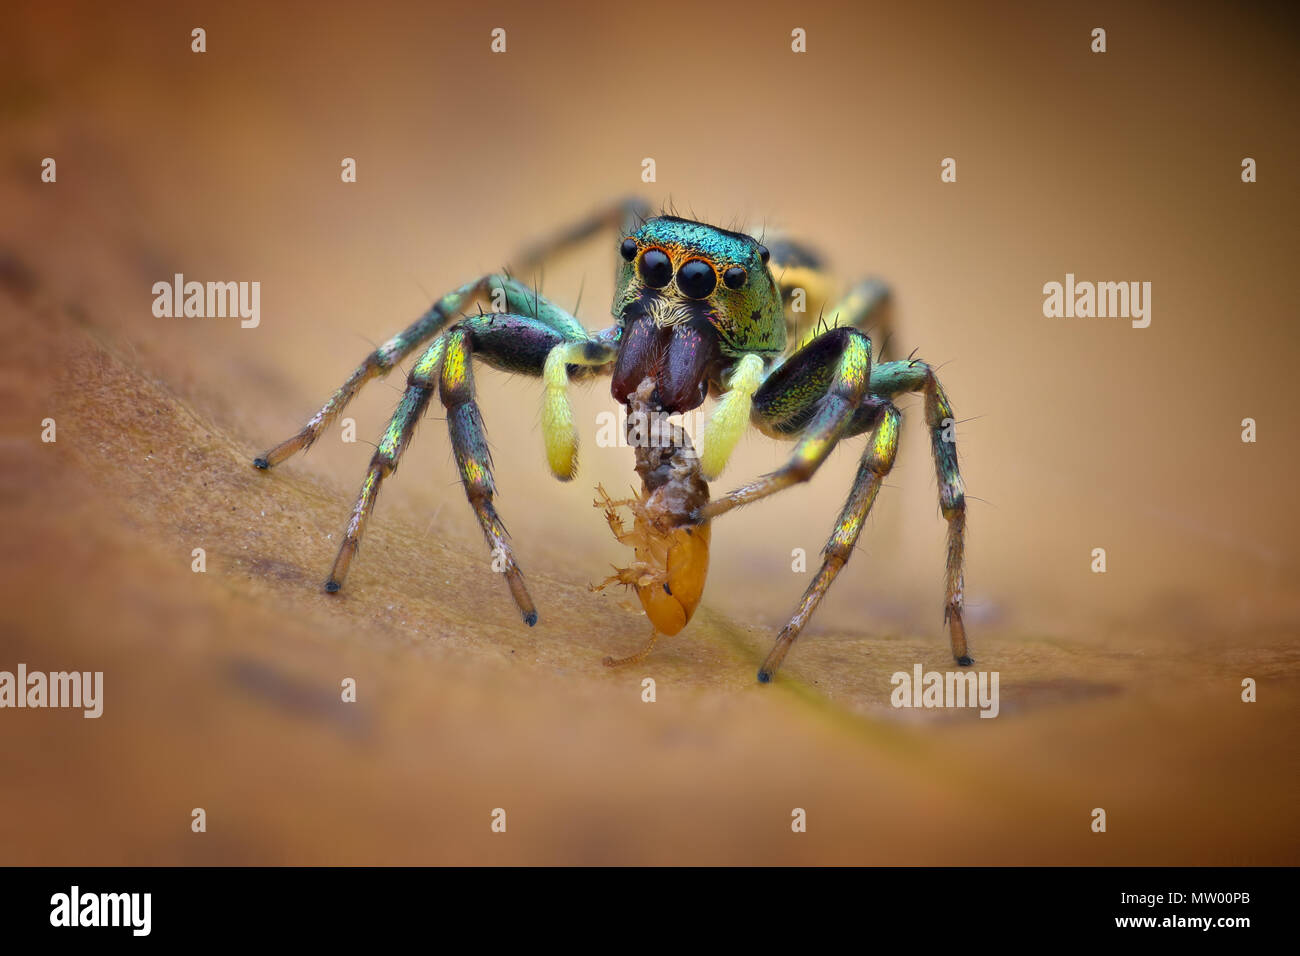 Araignée sauteuse avec les proies, Batam, Indonésie, Kepulauan Riau Banque D'Images